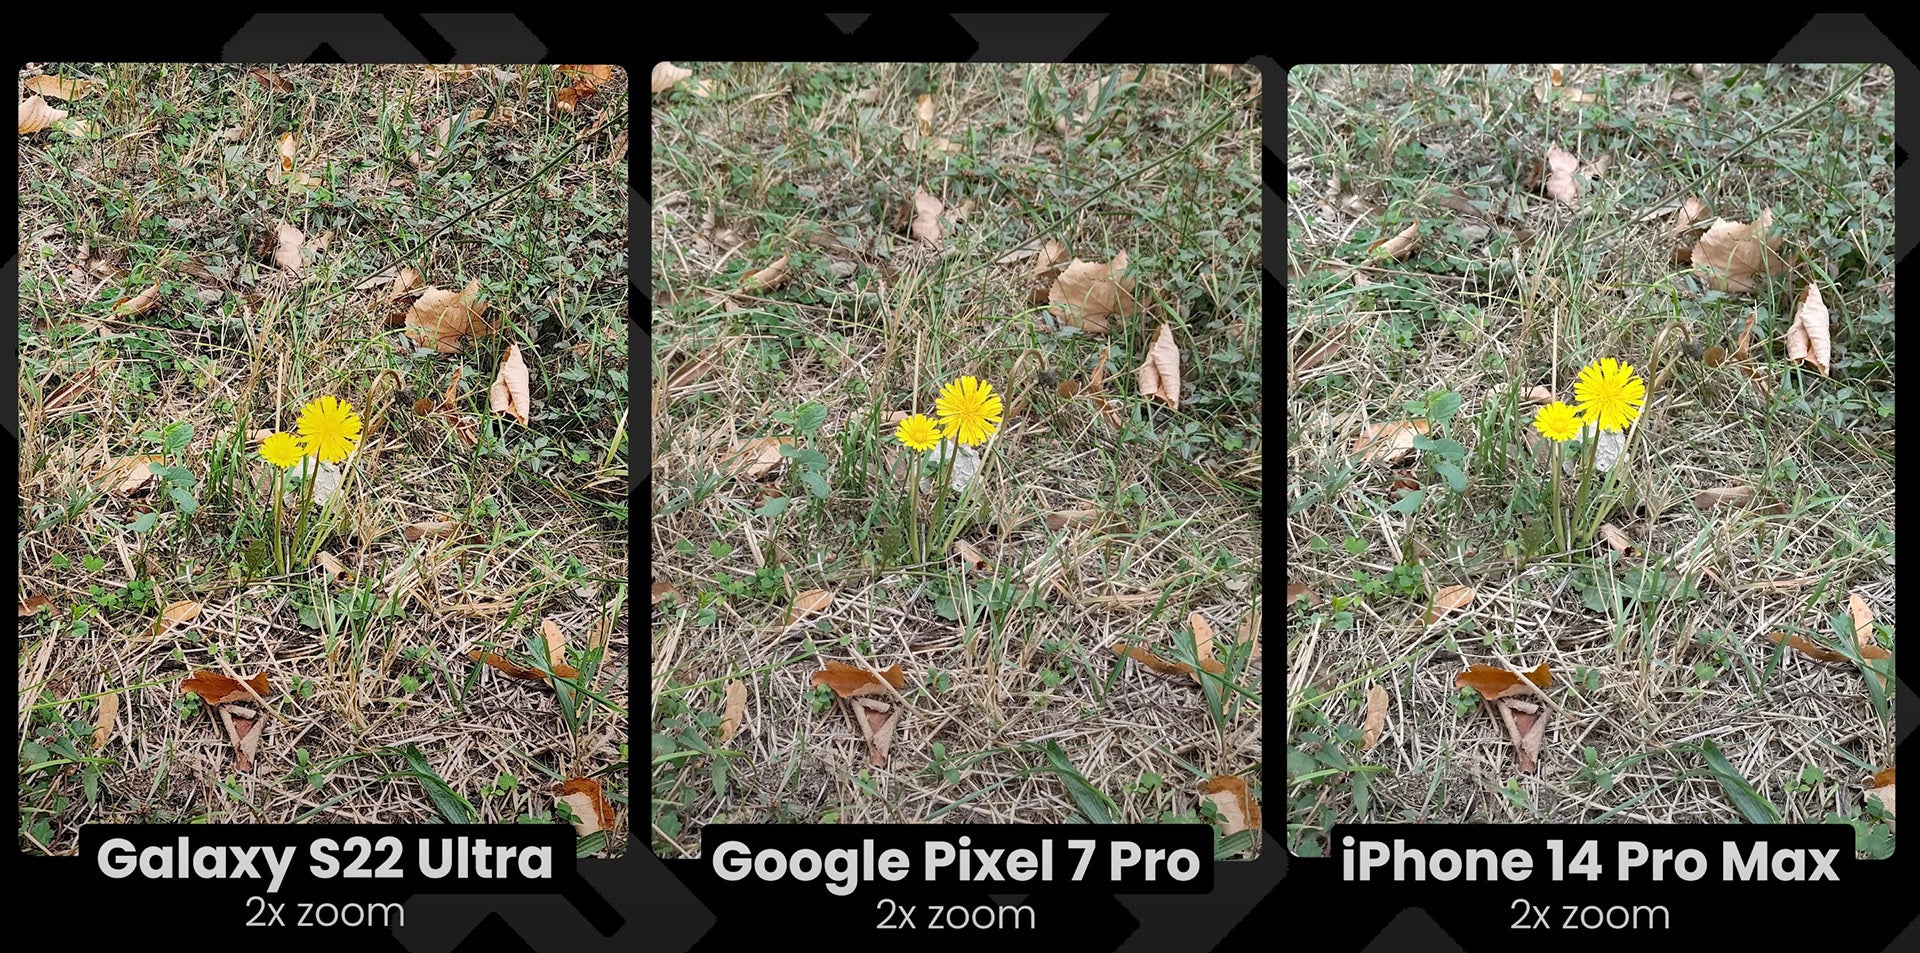 (Crédito de la imagen - PhoneArena) A pesar de tener el sensor de mayor resolución, a 2X el Galaxy S22 Ultra captura menos detalles que el iPhone 14 Pro y Pixel 7 Pro: Samsung y Xiaomi desconcertados, la cámara 2X de Apple es demasiado buena